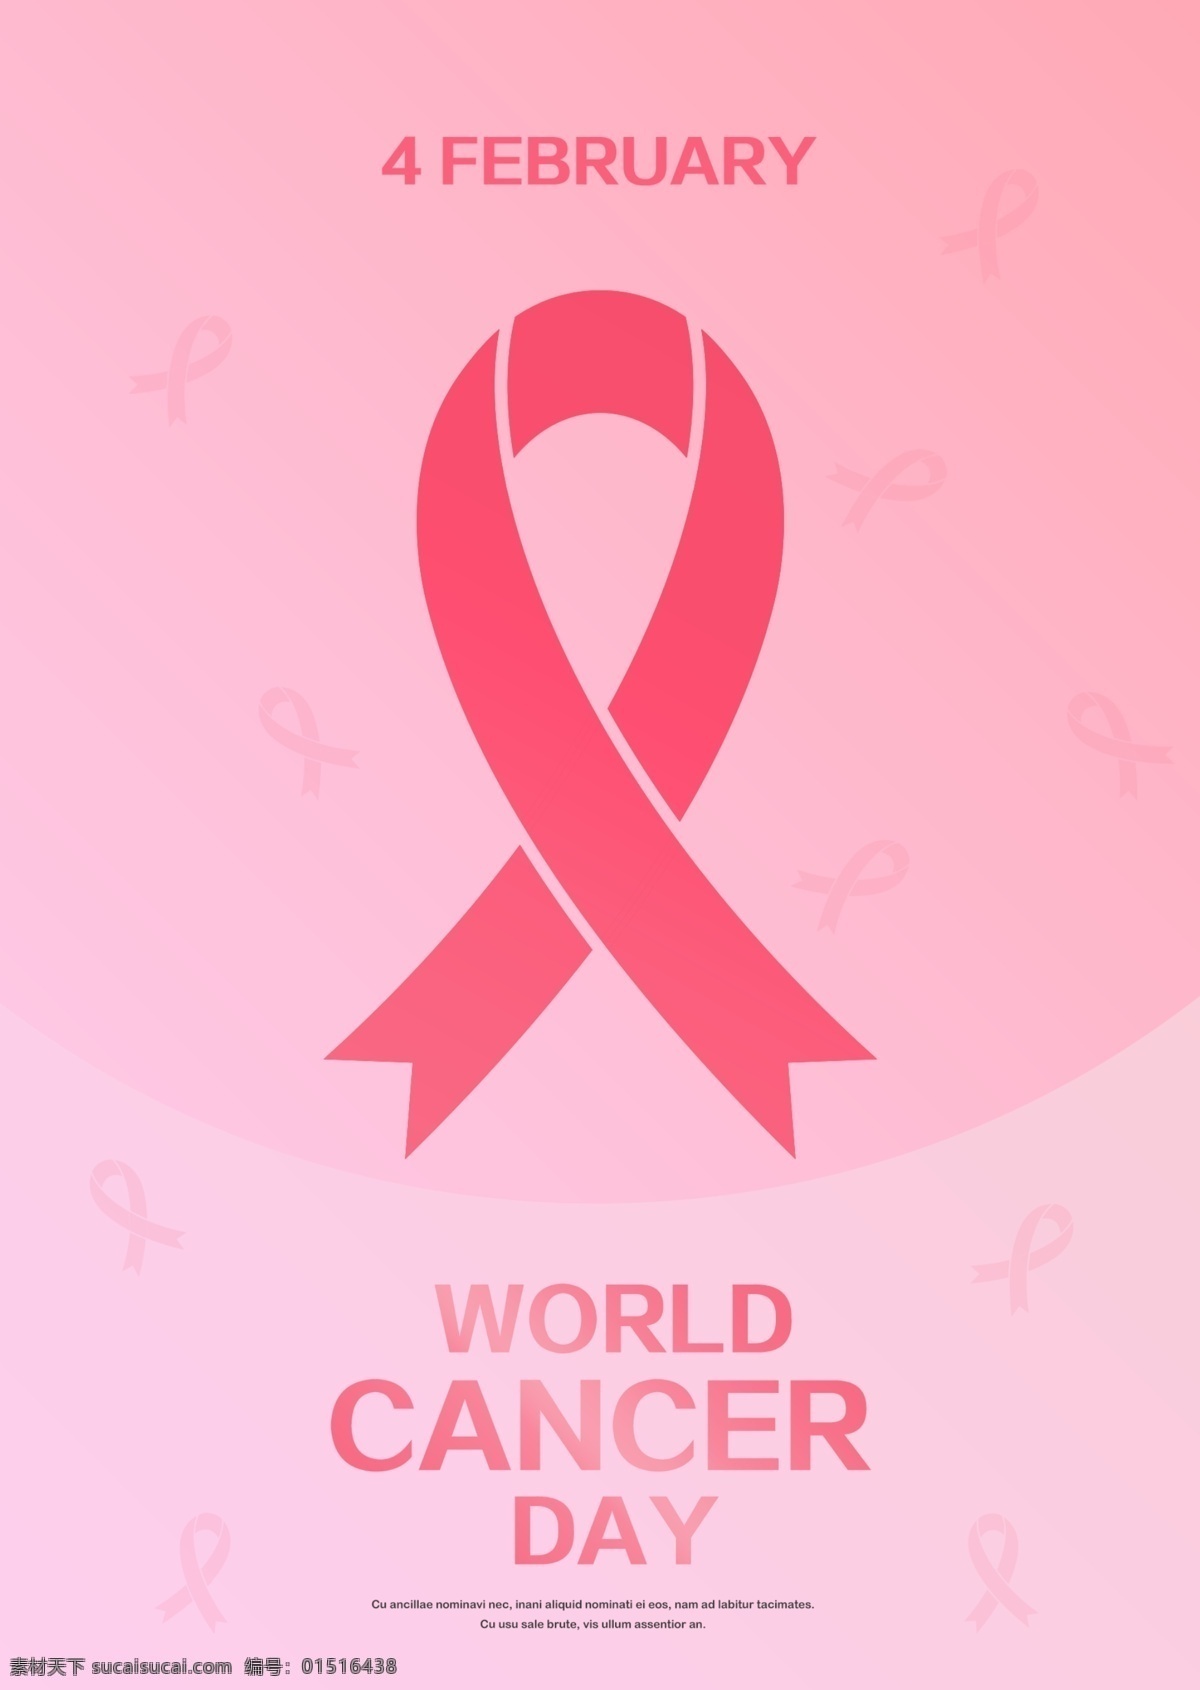 粉红色 红丝 带 世界 癌症 日 海报 模板 丝带 宣传 现代 简单 粉 红色 疾病 粉红丝带 癌症宣传 预防癌症 公益事业 图案 背景 2月4日